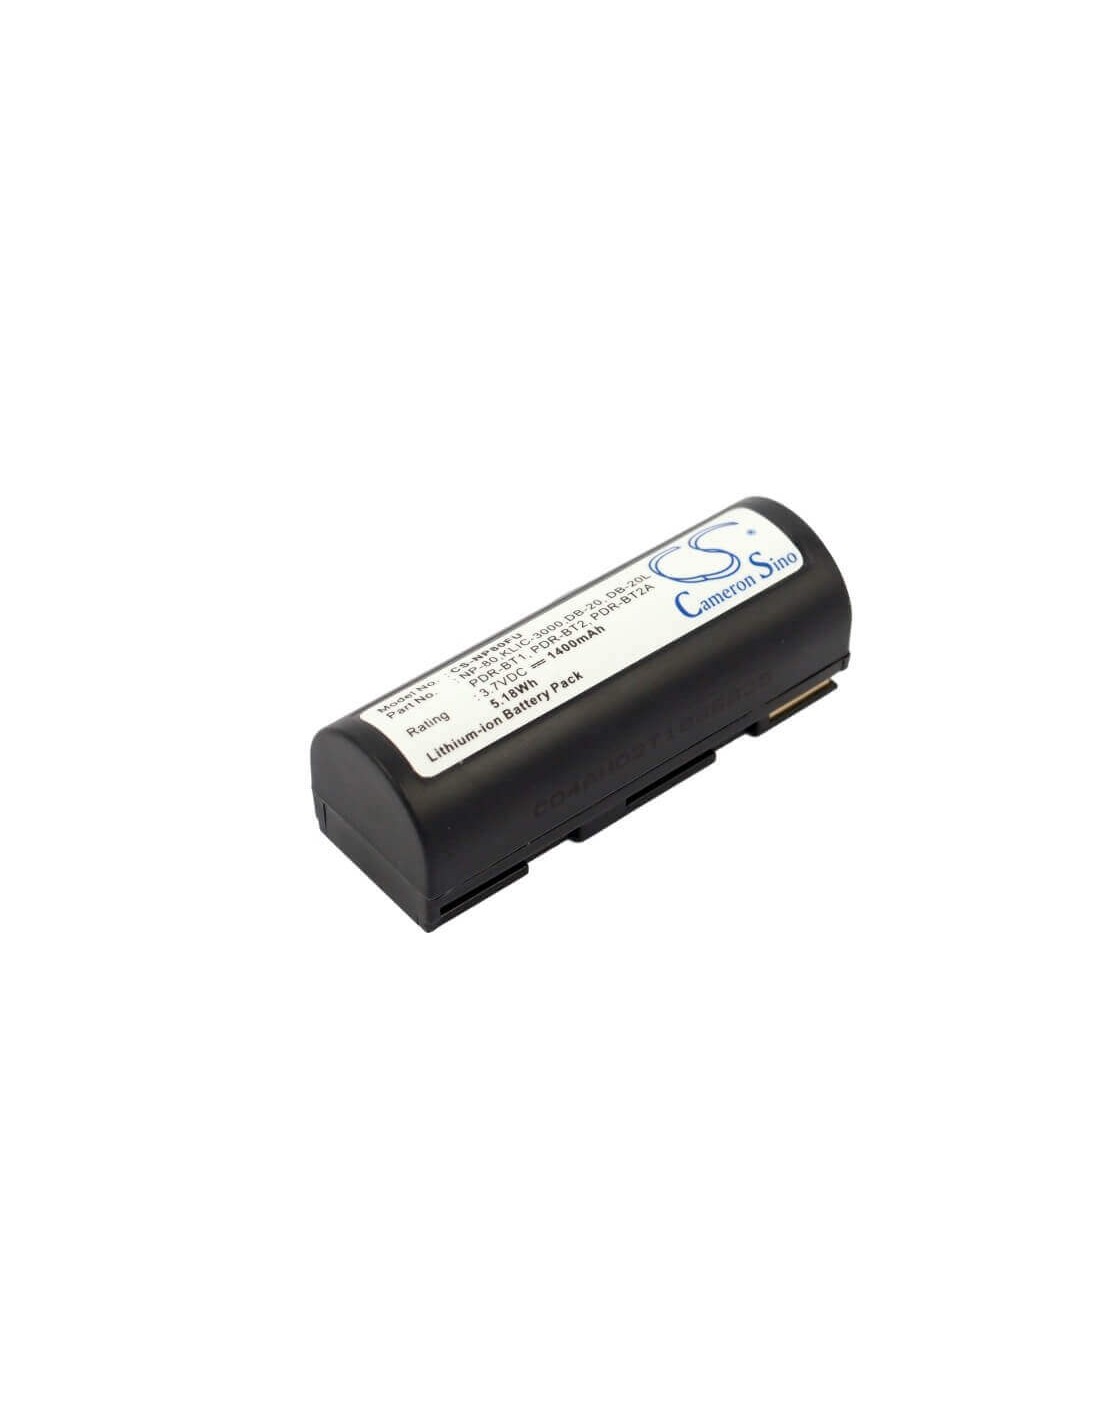 Battery for Kyocera Microelite 3300 3.7V, 1400mAh - 5.18Wh